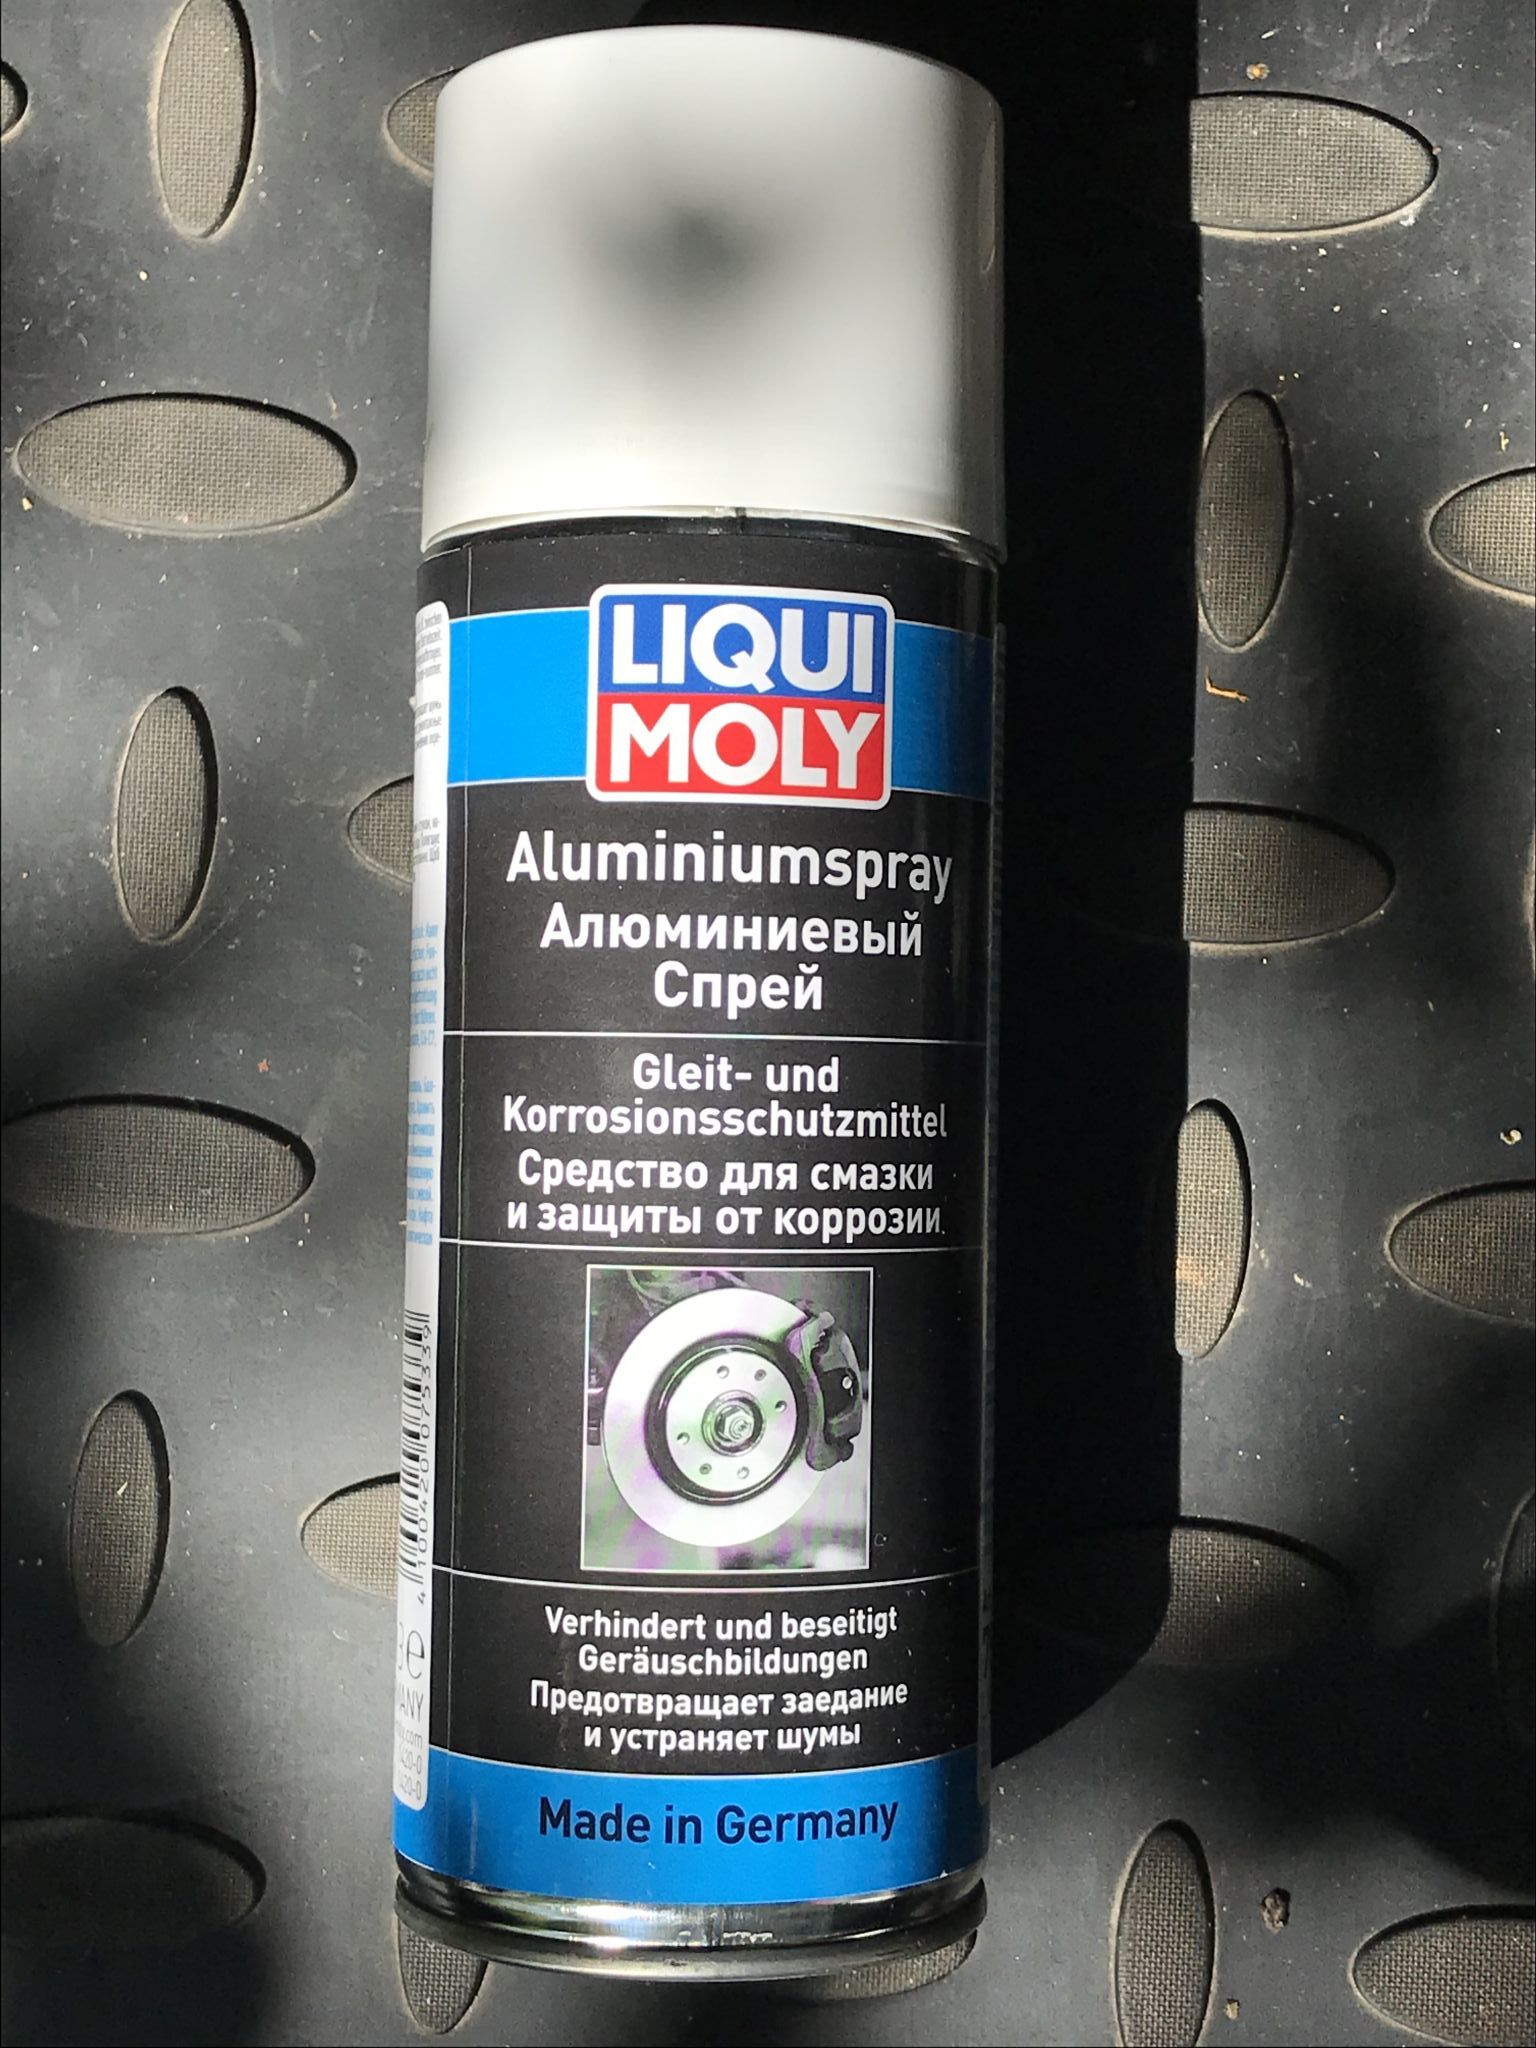 Смазка алюминиевая аэрозольная. Liqui Moly Aluminium-Spray. 7533 Liqui Moly. Смазка Liqui Moly Aluminium-Spray. Ликви Молли алюминиевая смазка.